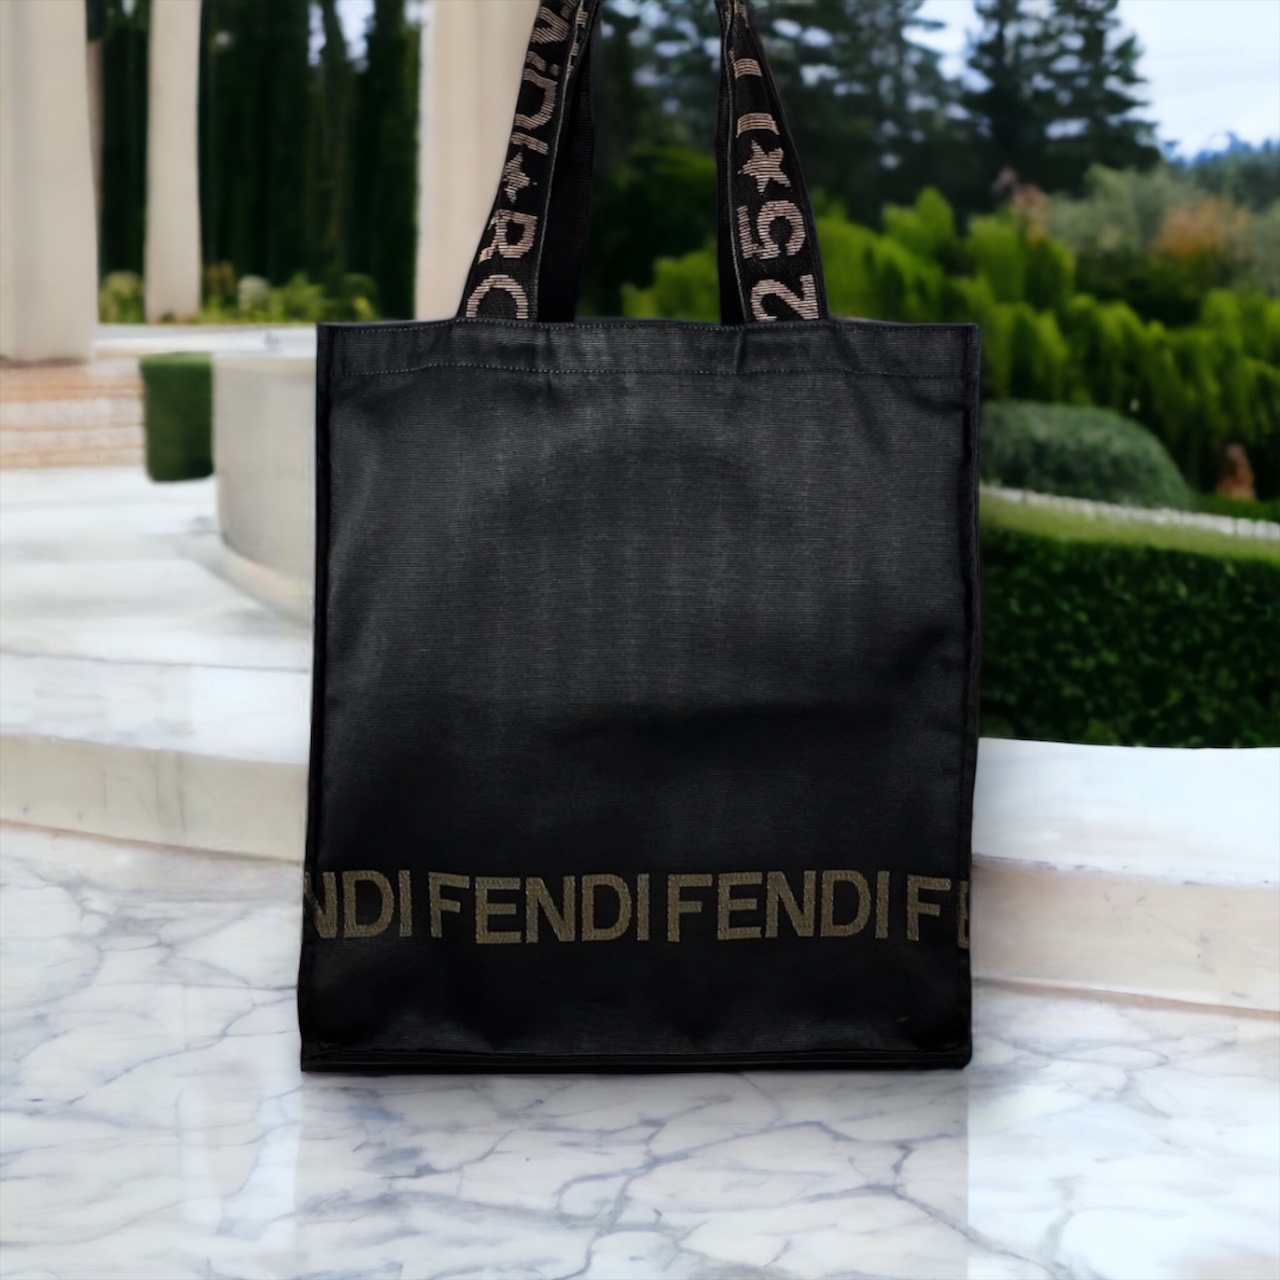 Fendi Nylon Tote Bag in Black / Brown | MTYCI